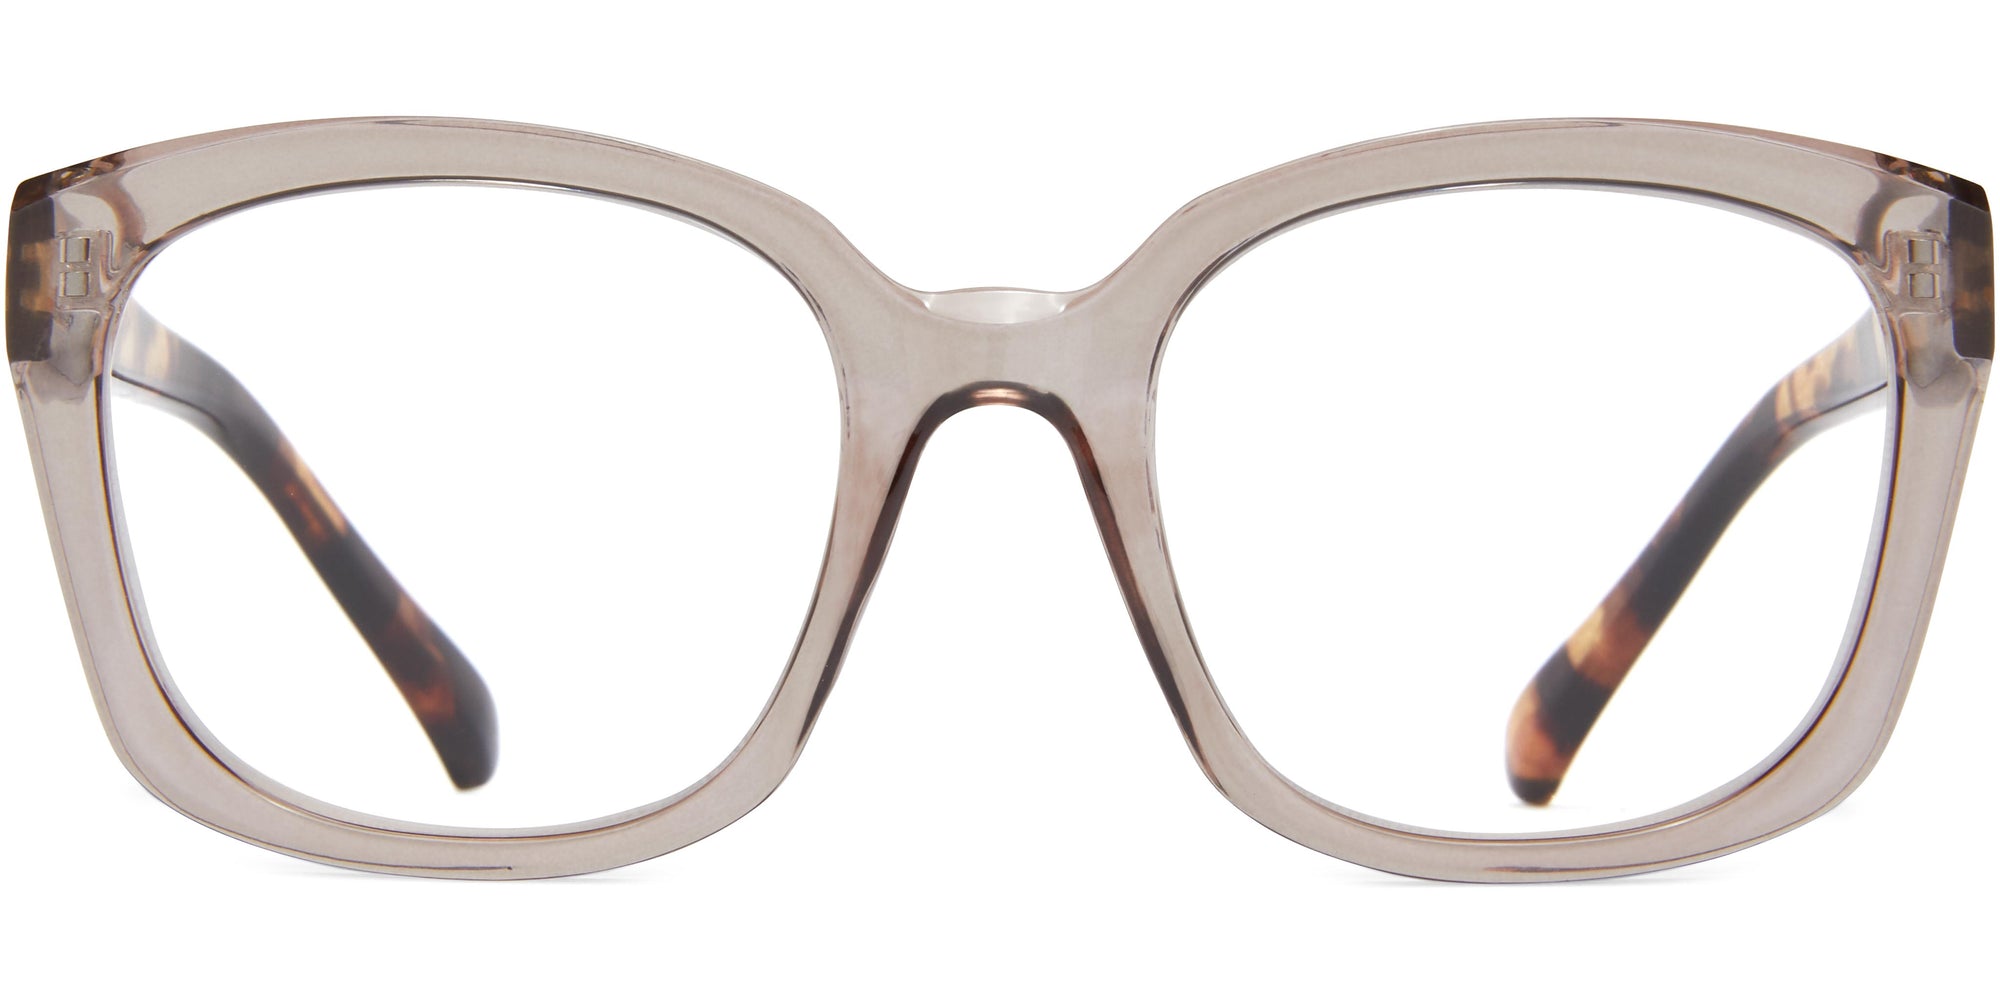 Freya - Brown/Tortoise / 1.25 - Reading Glasses